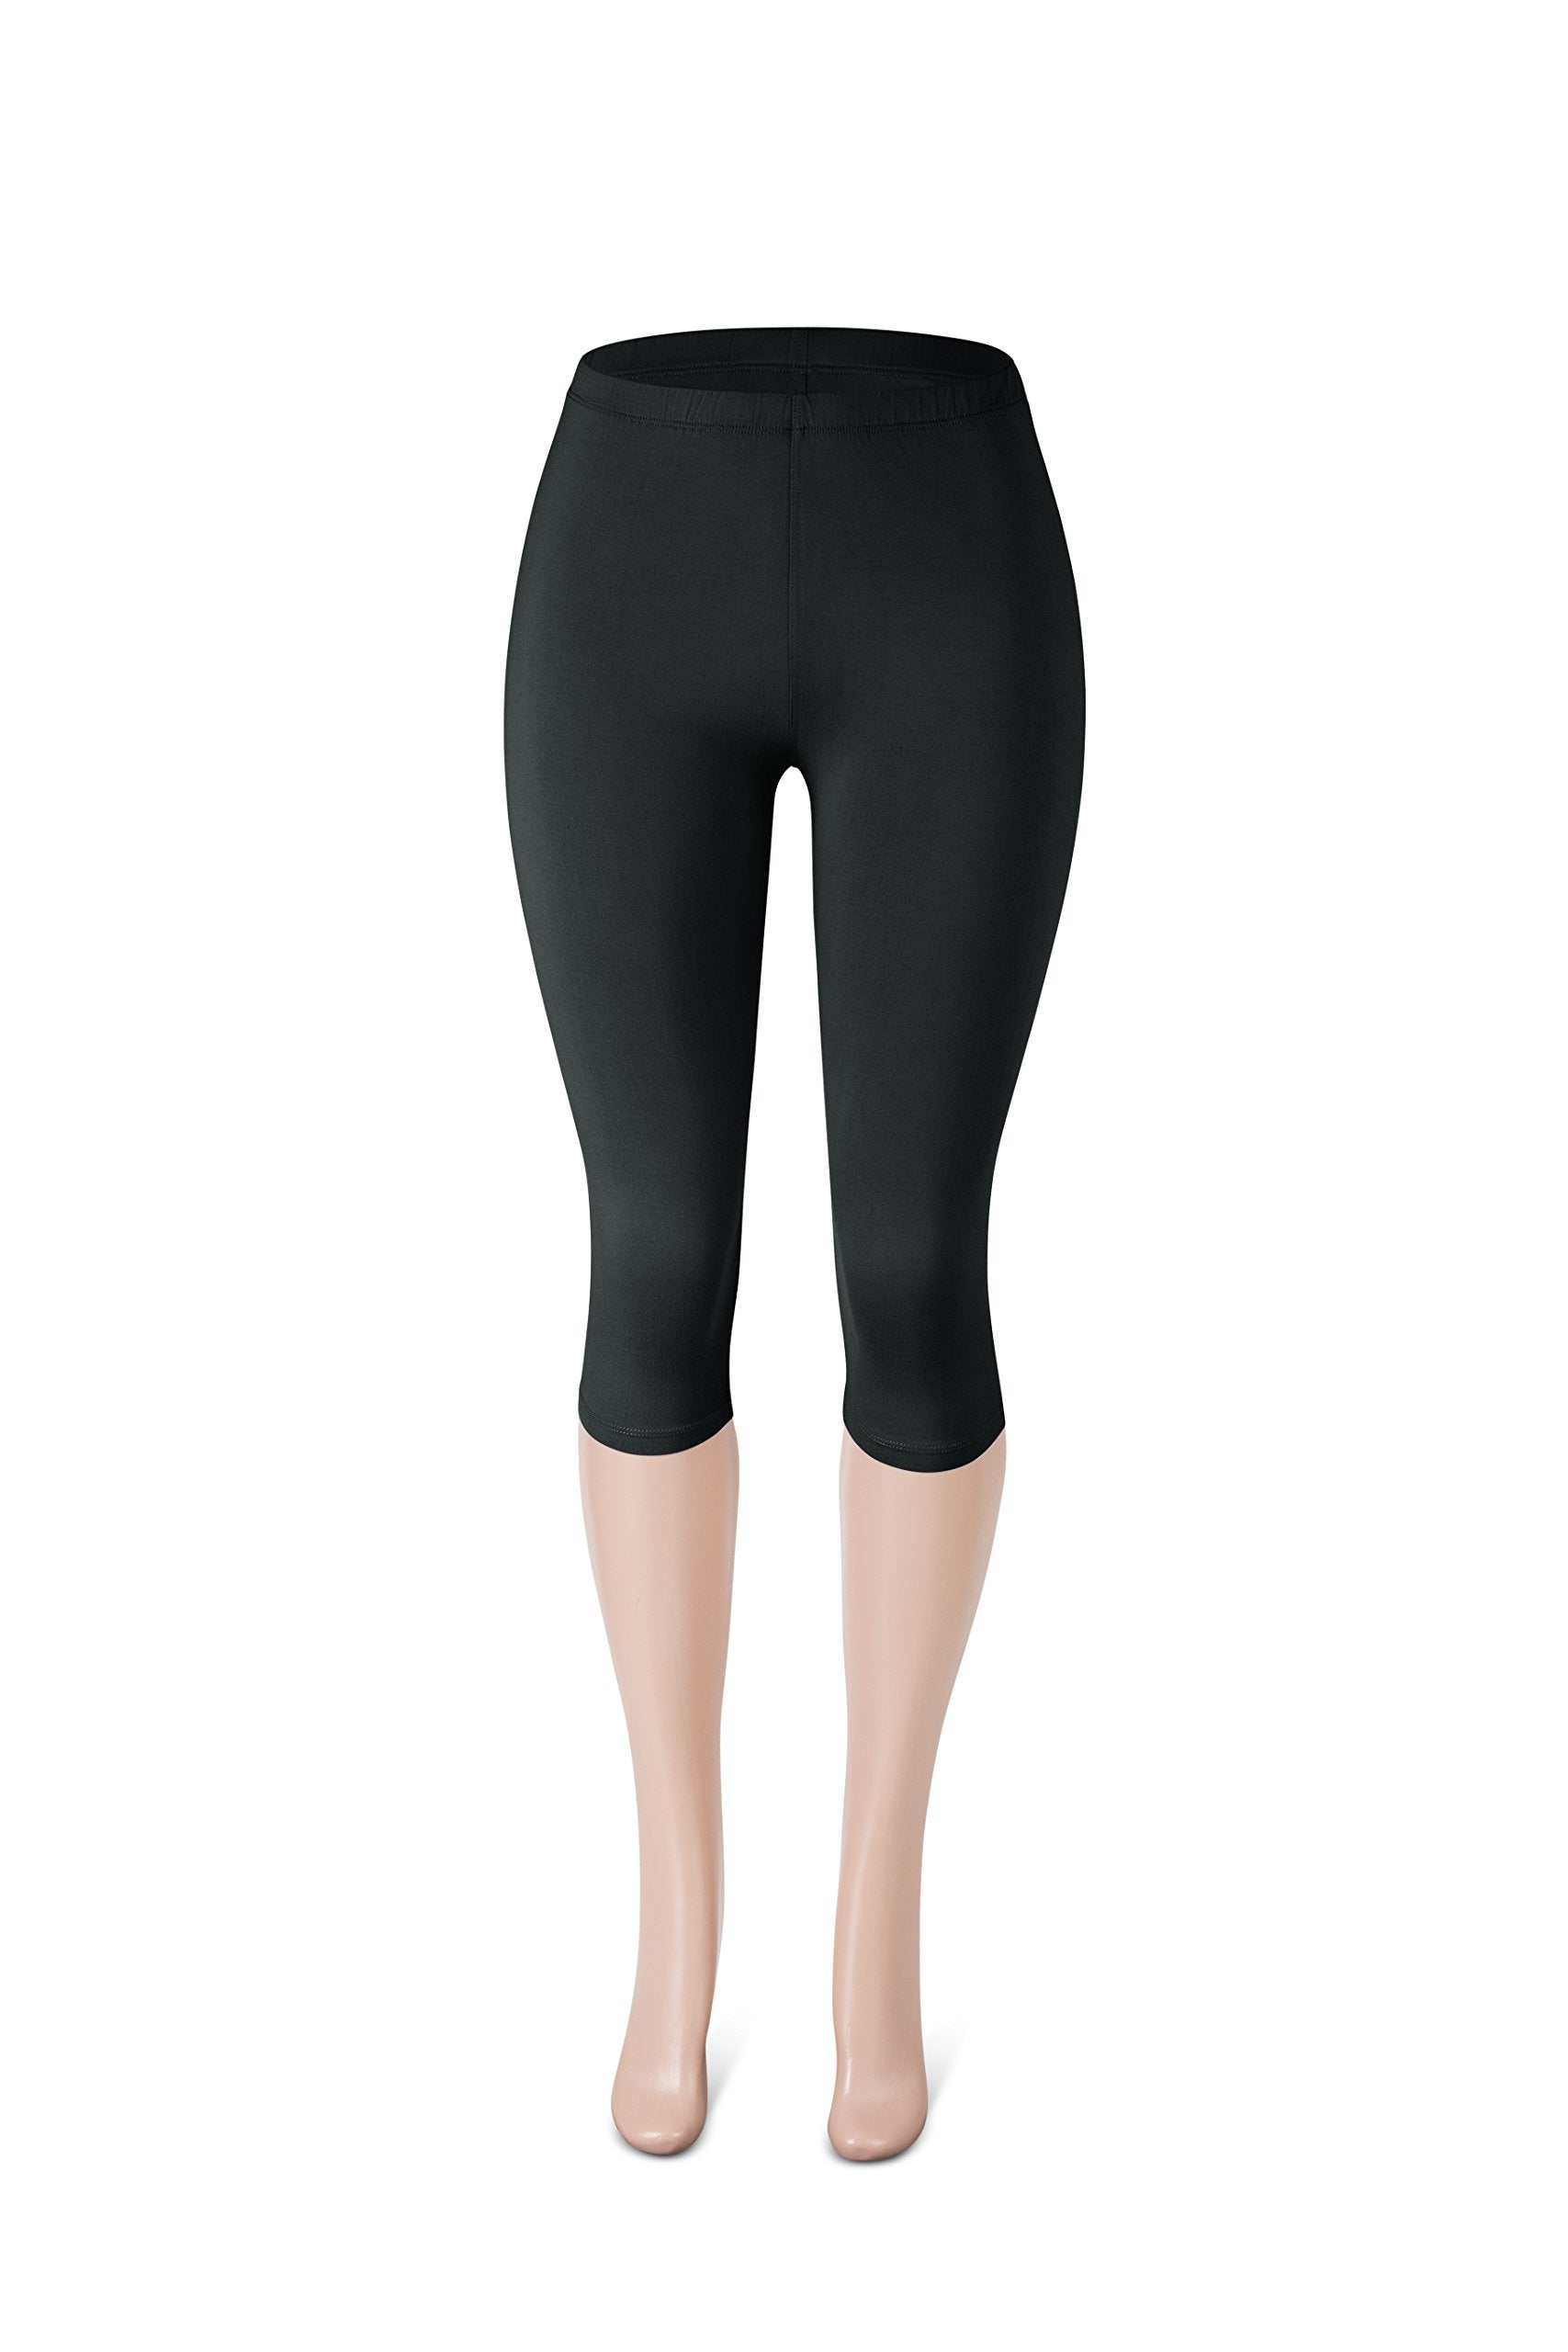 NEW SATINA Women's High Waisted Leggings | Full Length | One Size | 01 Capri Black